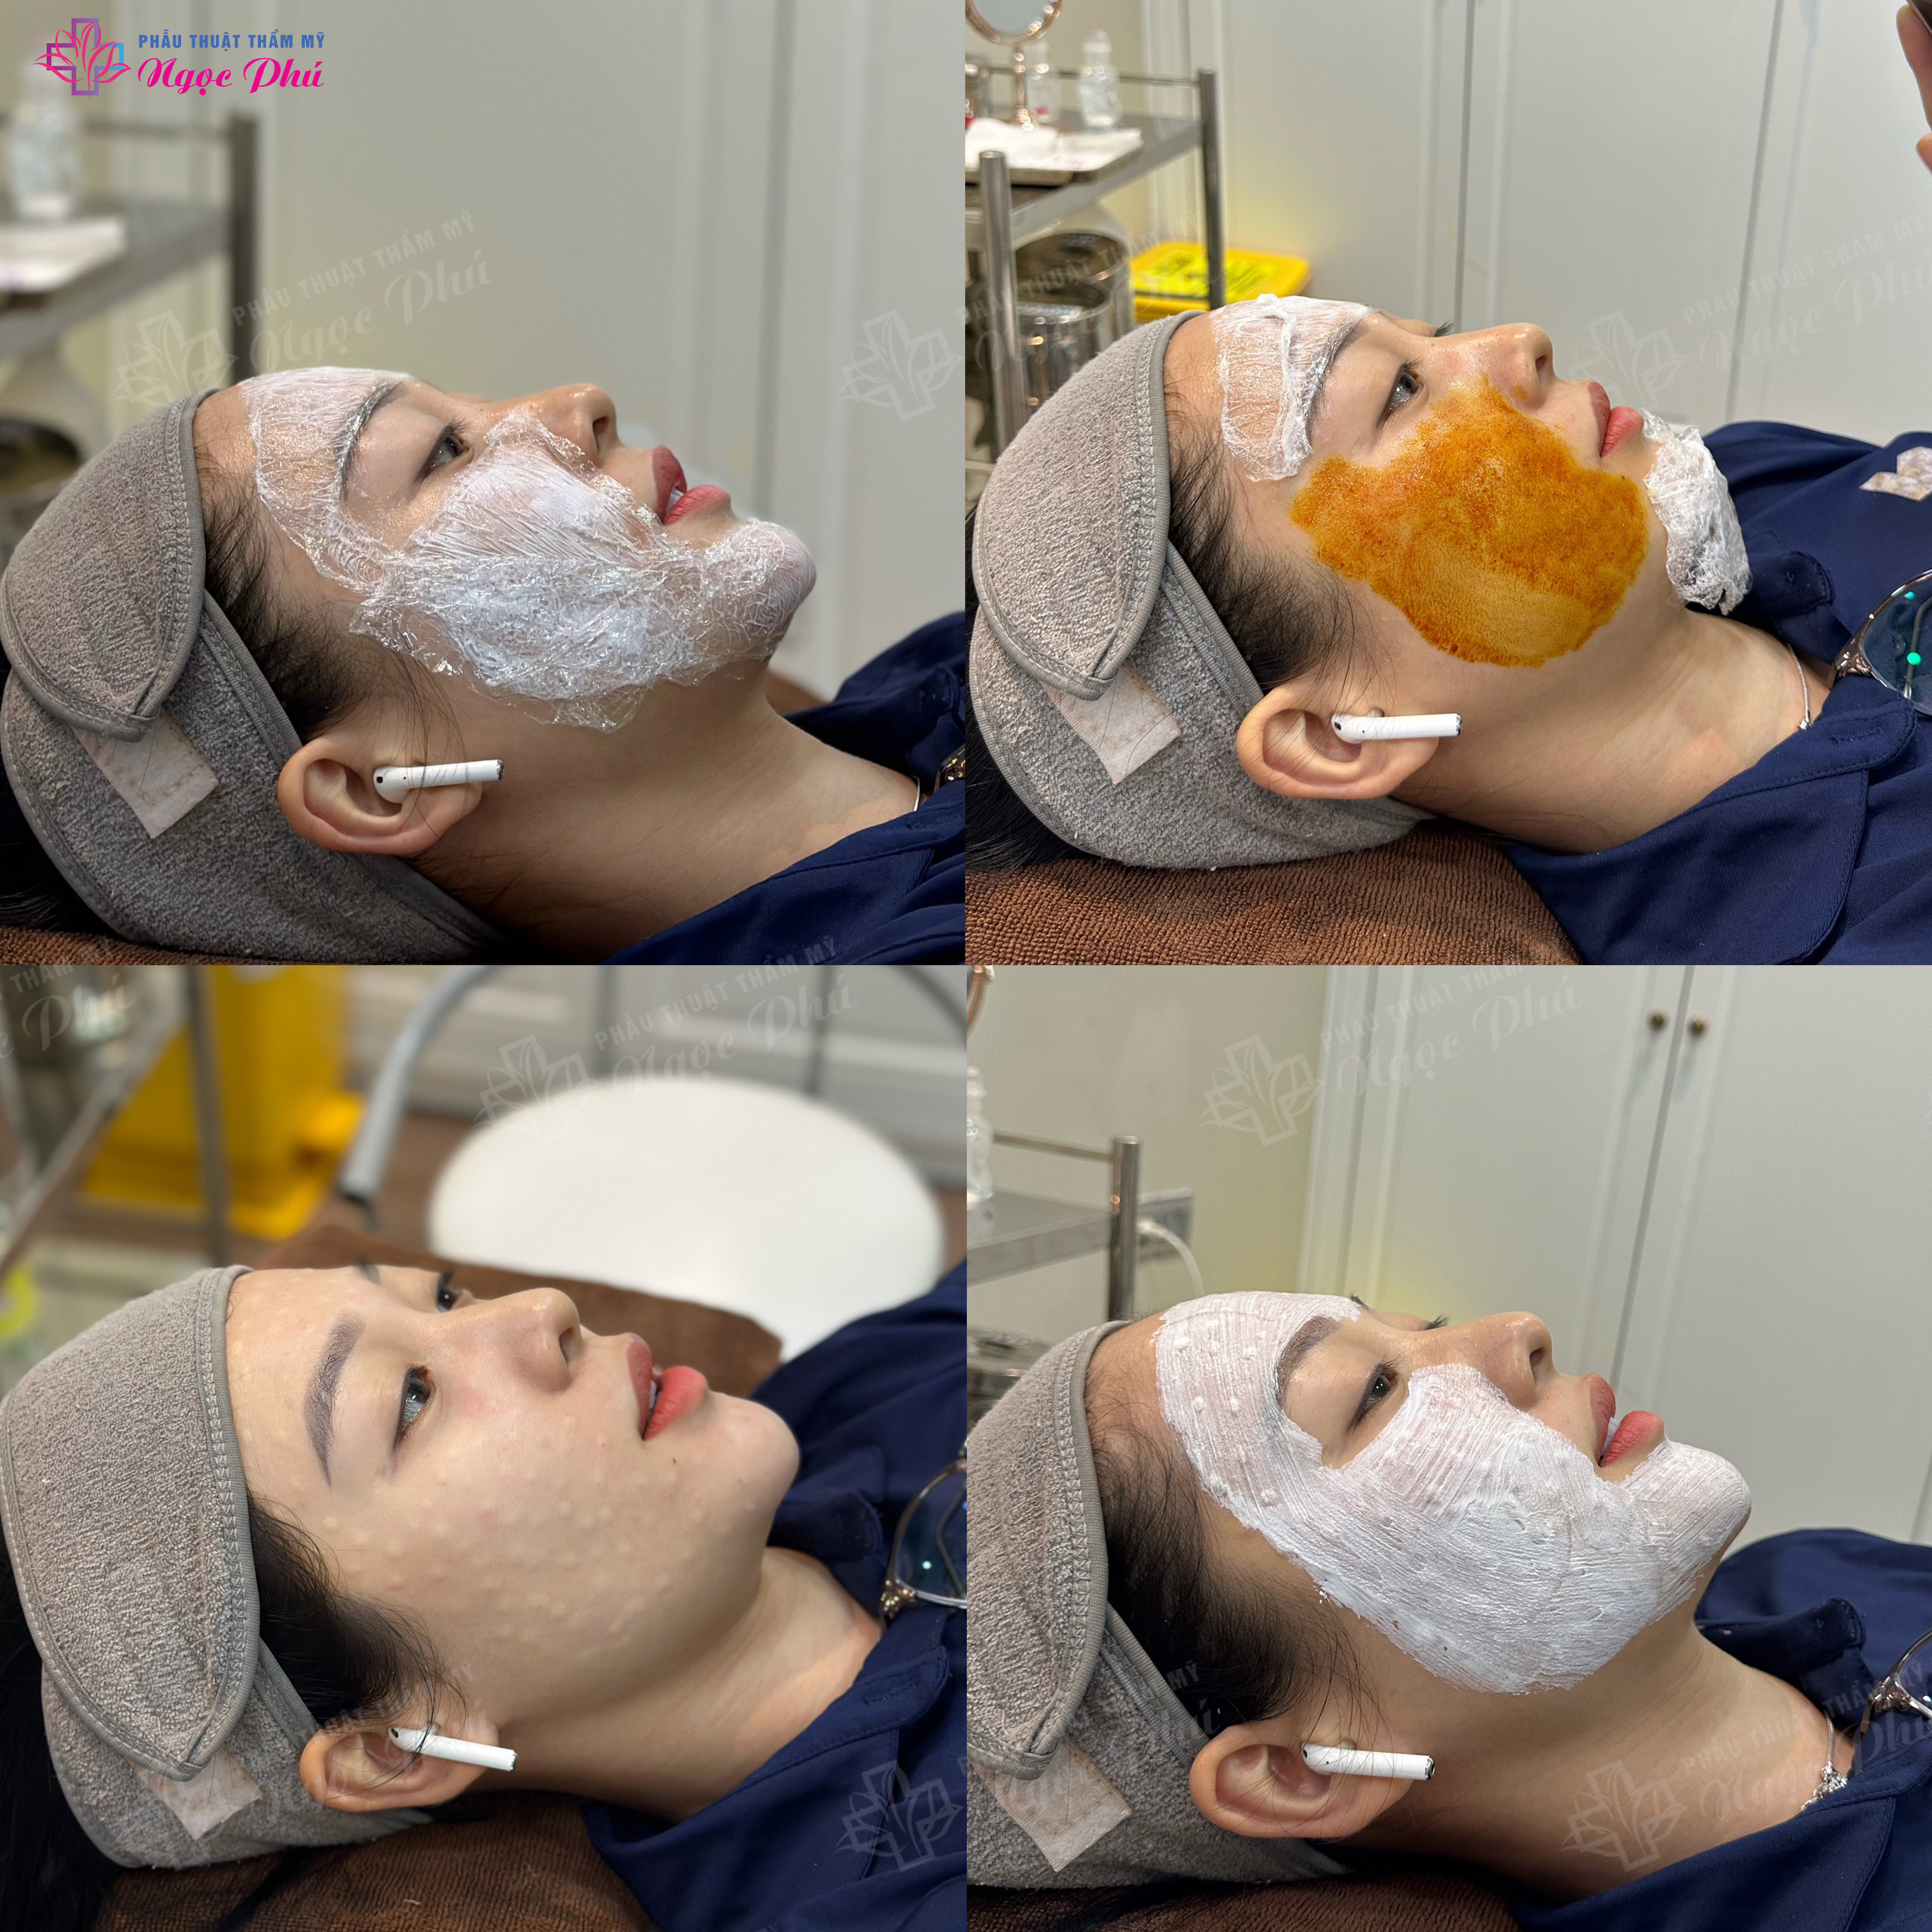 Công nghệ Tiêm Mesotherapy tại Thẩm mỹ Ngọc Phú là một trong những công nghệ làm đẹp xâm lấn tối thiểu giúp làn da khỏe khoắn, săn chắc và mịn màng.